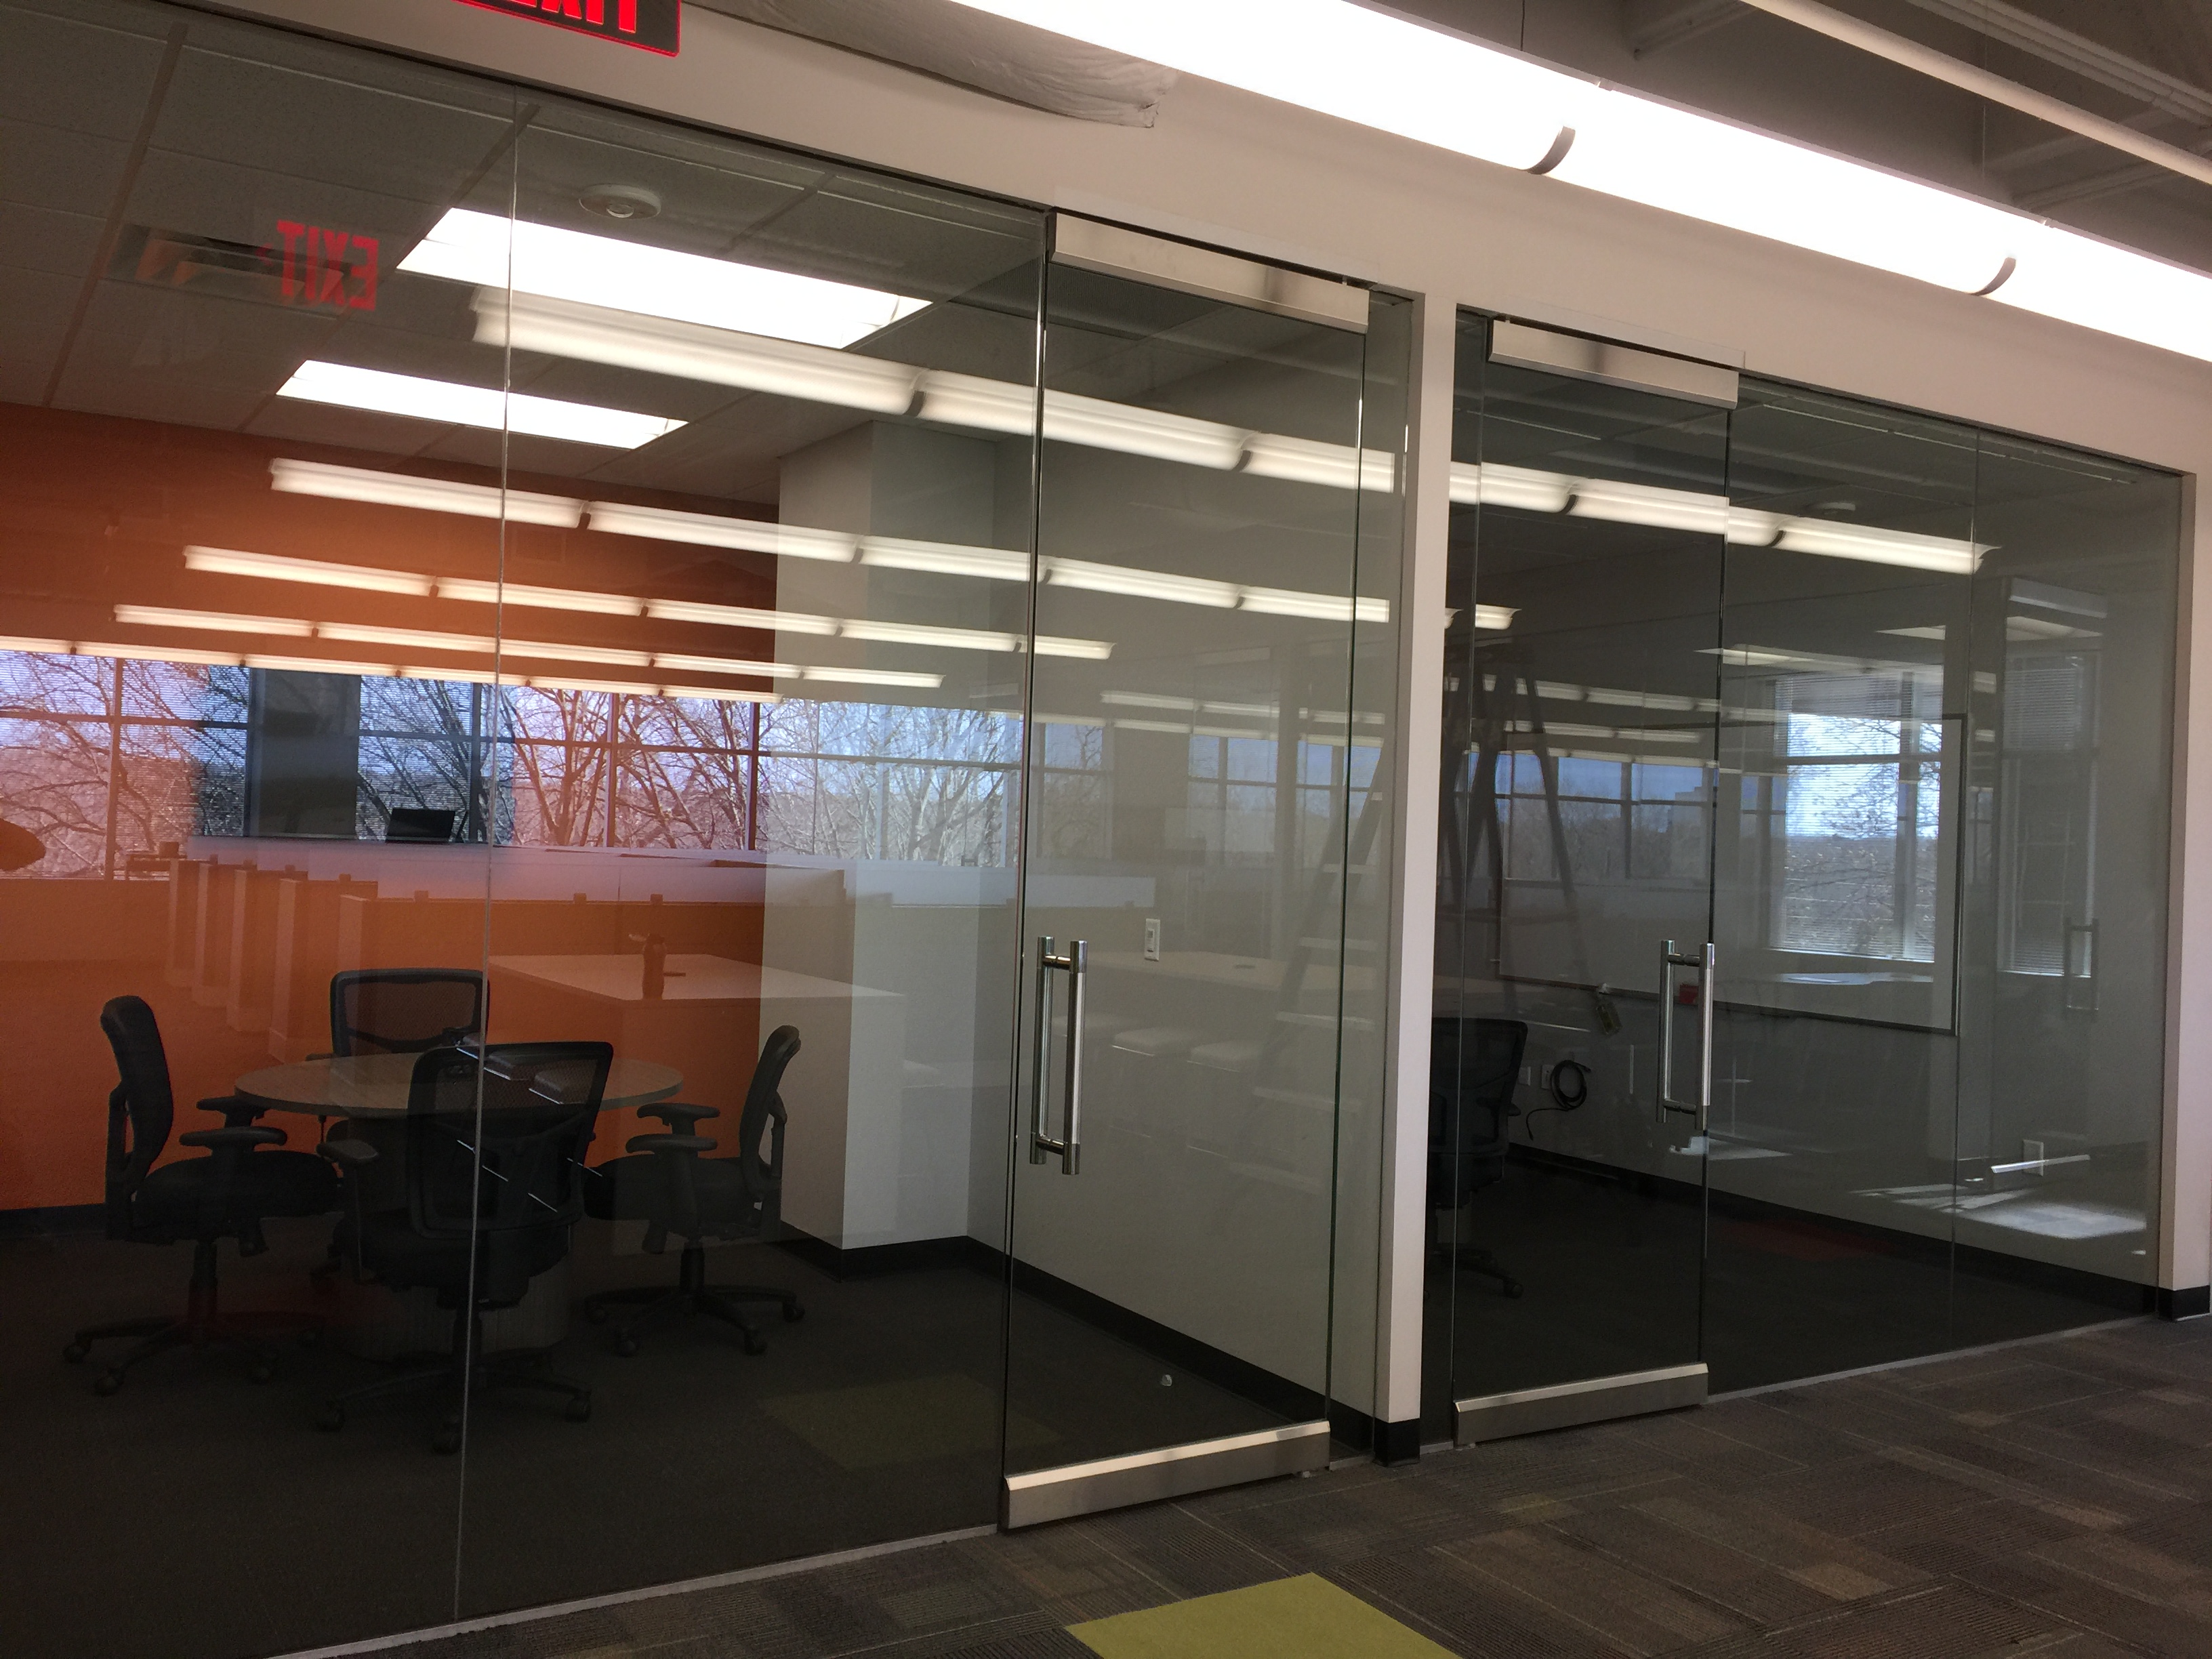 Pollo Campero Corporate office in Dallas, TX gets a Decorative window film  face-lift